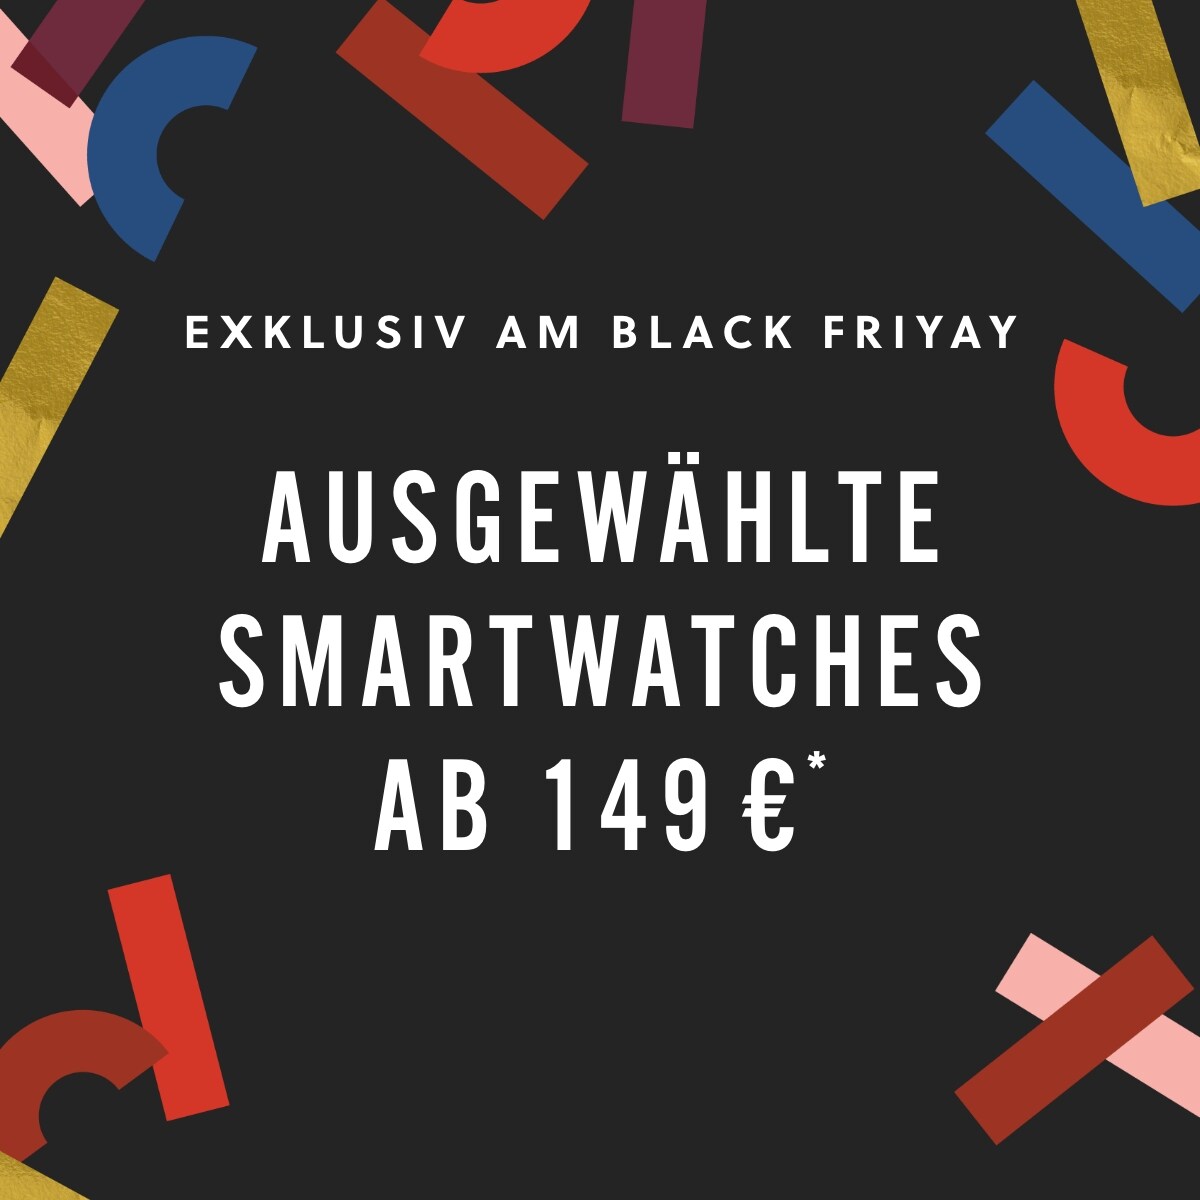 EXKLUSIV AM BLACK FRIYAY AUSGEWÄHLTE SMARTWATCHES AB 149 €*